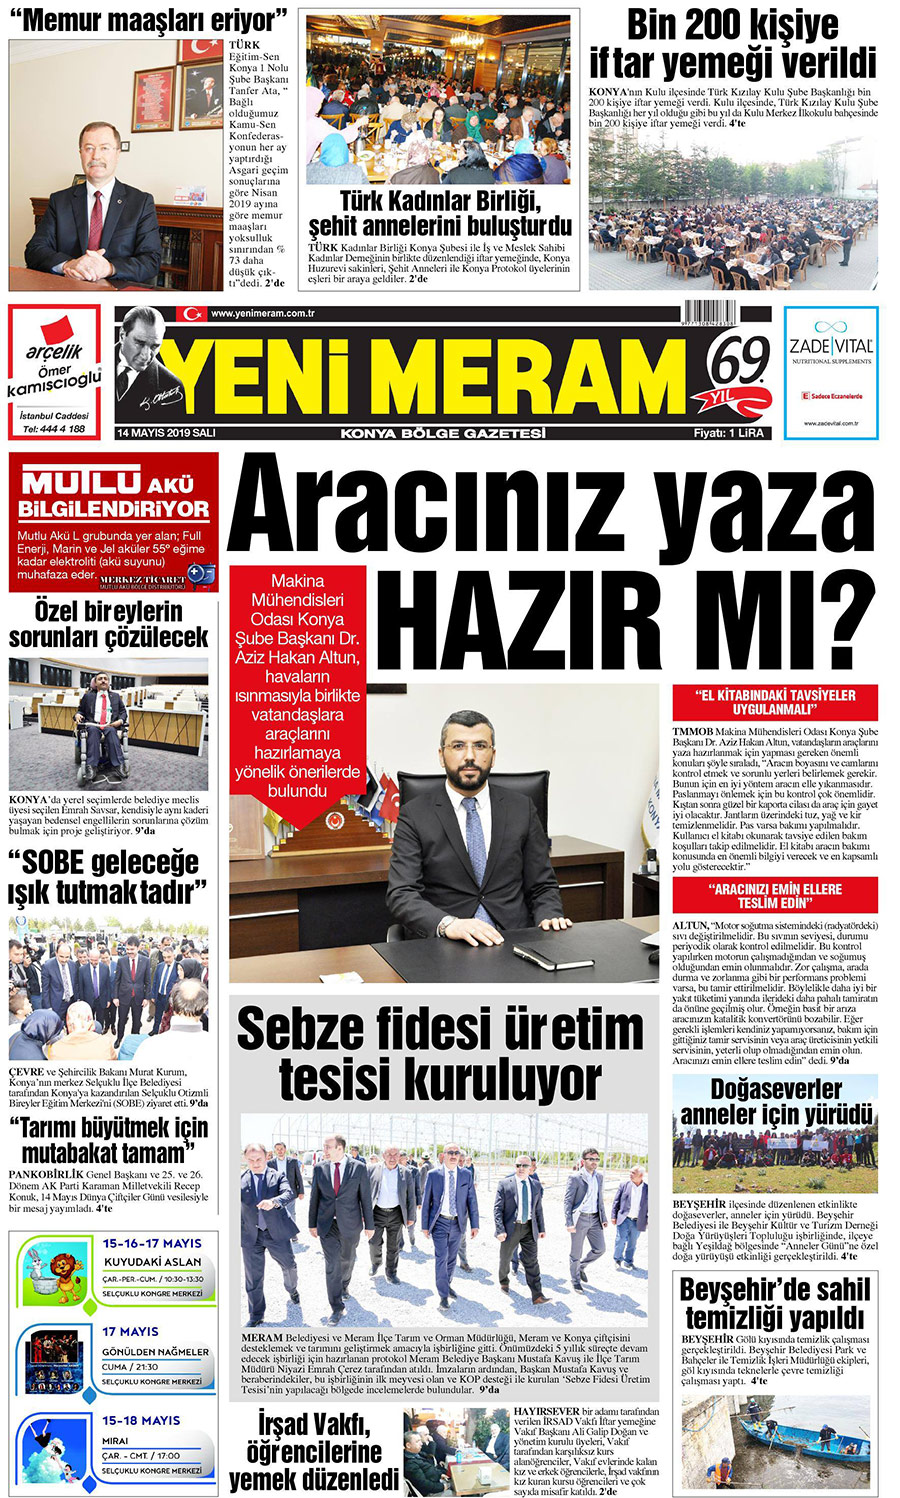 14 Mayıs 2019 Yeni Meram Gazetesi